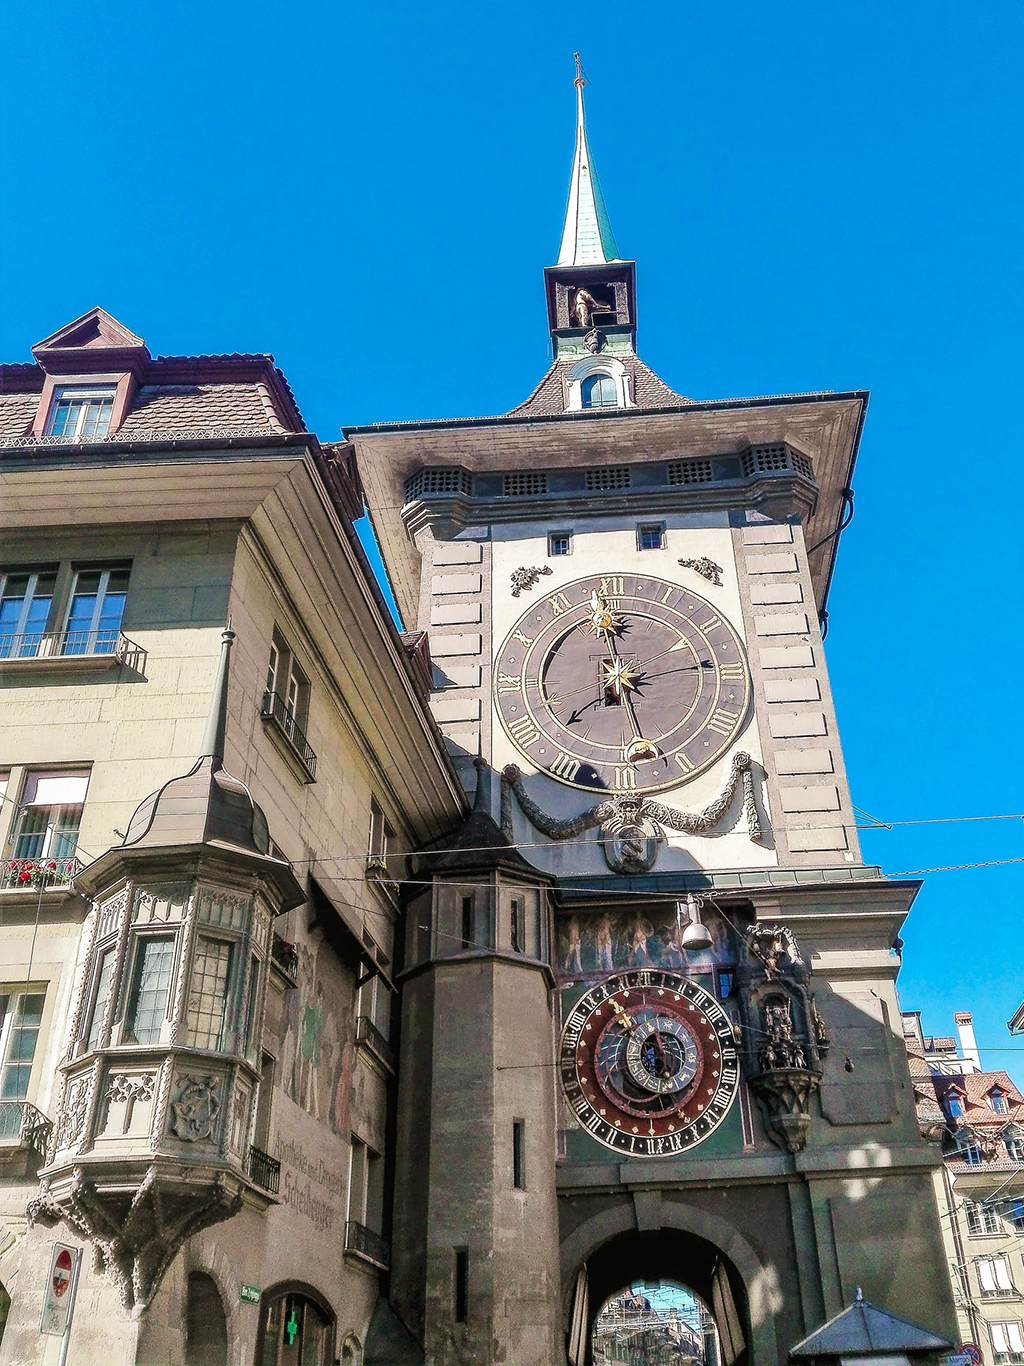 Astronomické hodiny Zytglogge v Bernu pochází z roku 1530